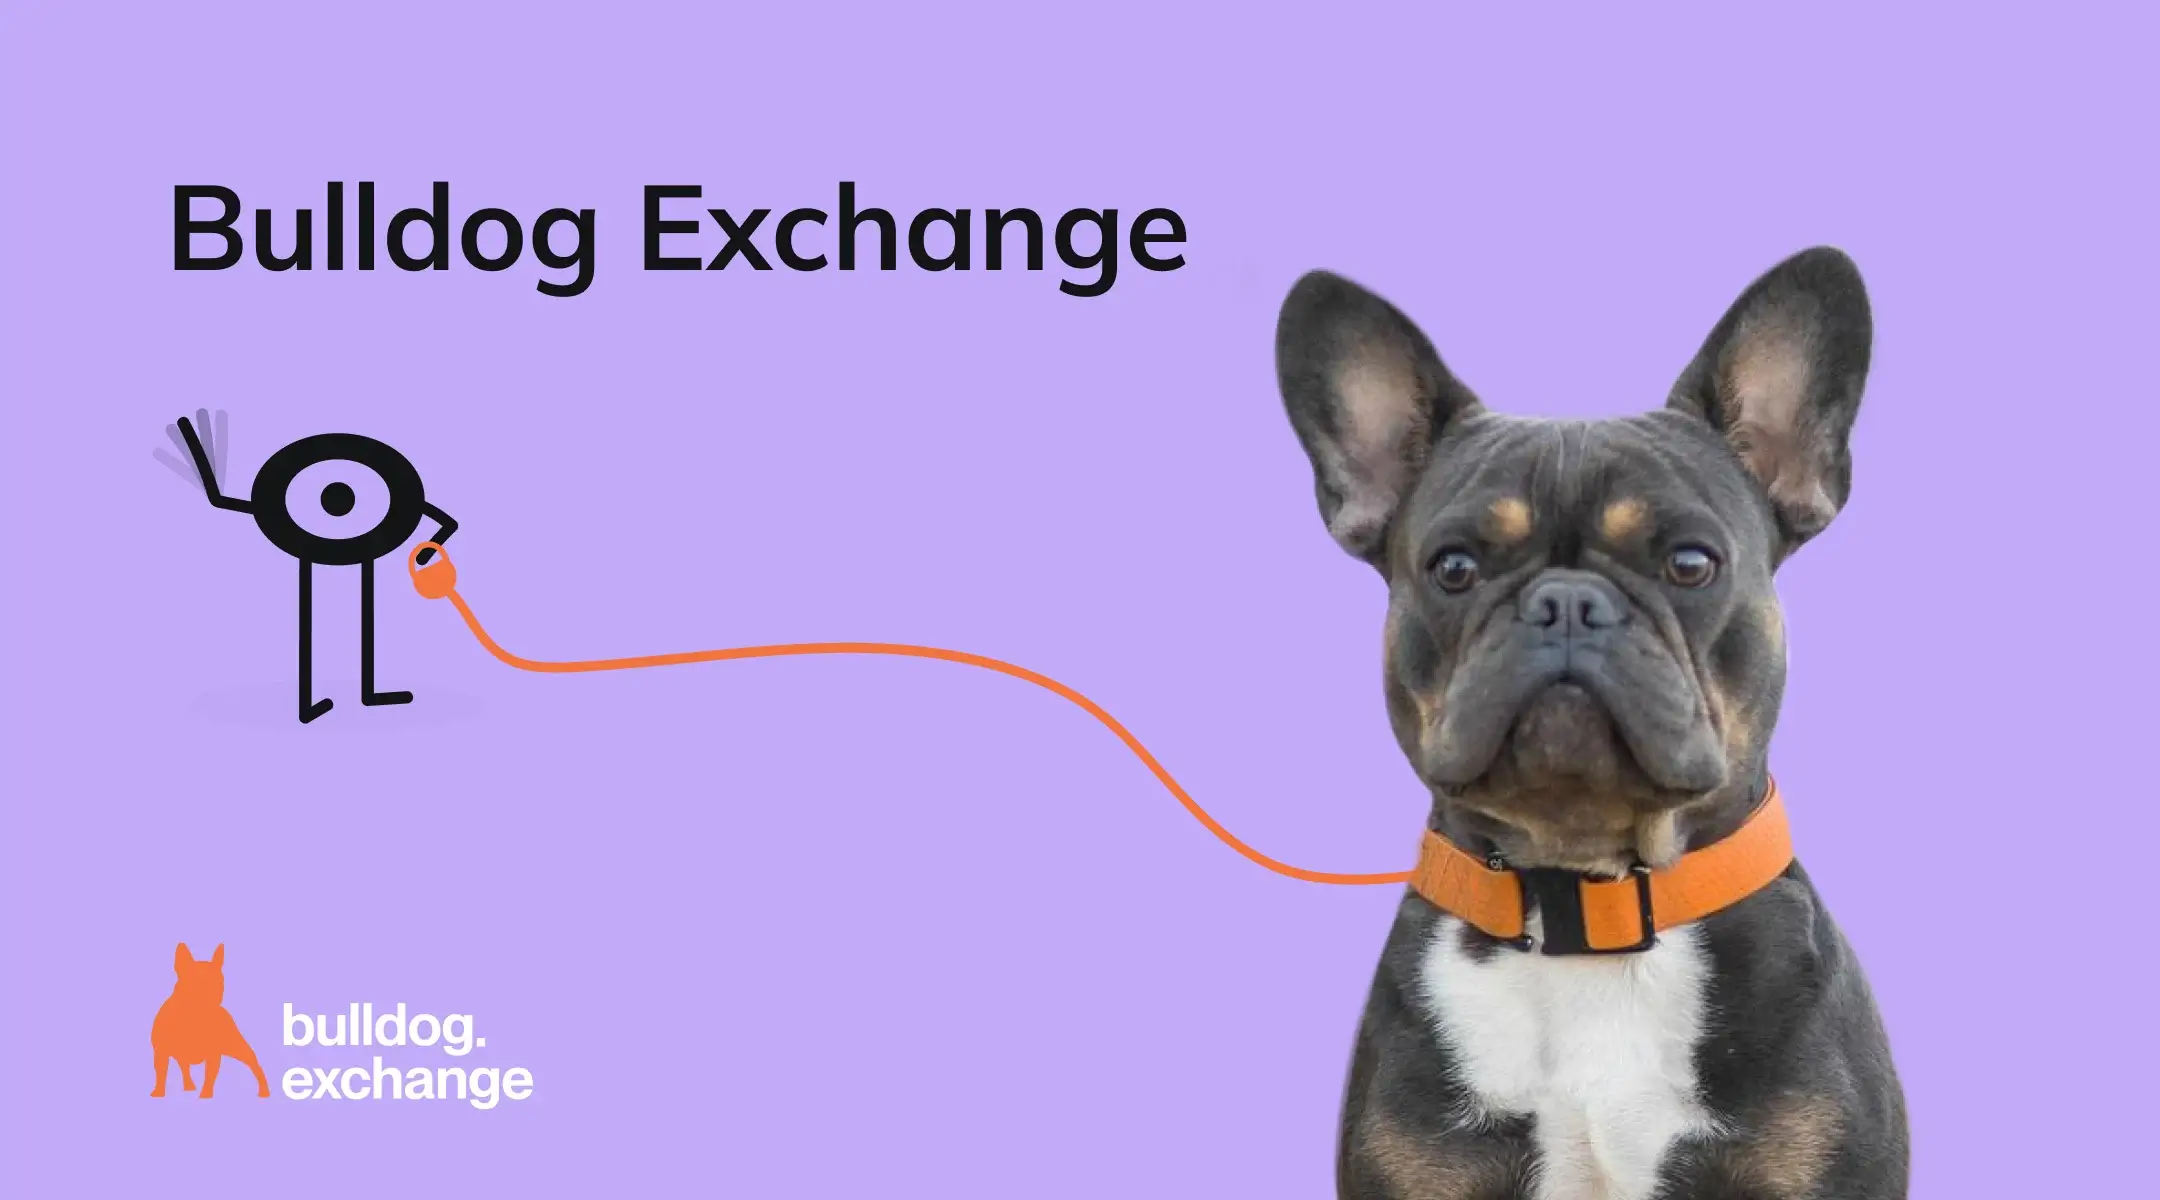 Bulldog Exchange: чому назвали обмінник на честь собаки?